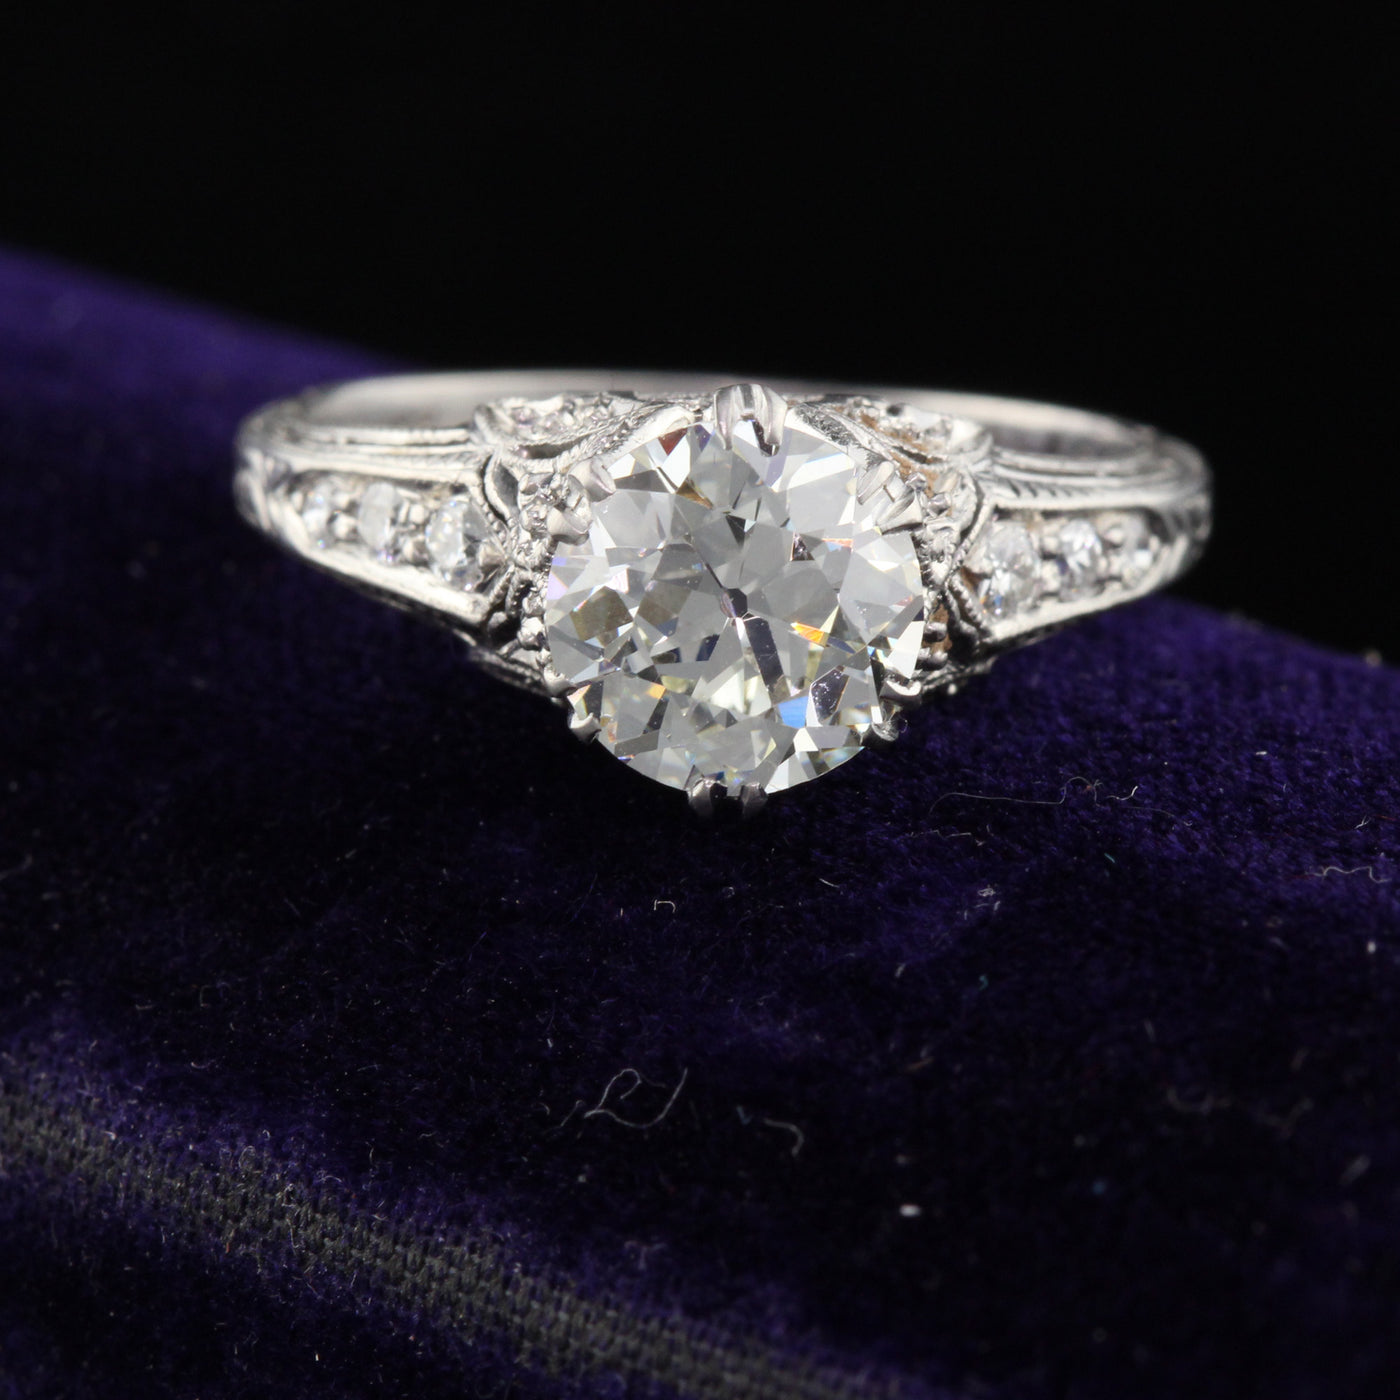 Antique Edwardian Platinum & Diamond Engagement Ring - The Antique Parlour